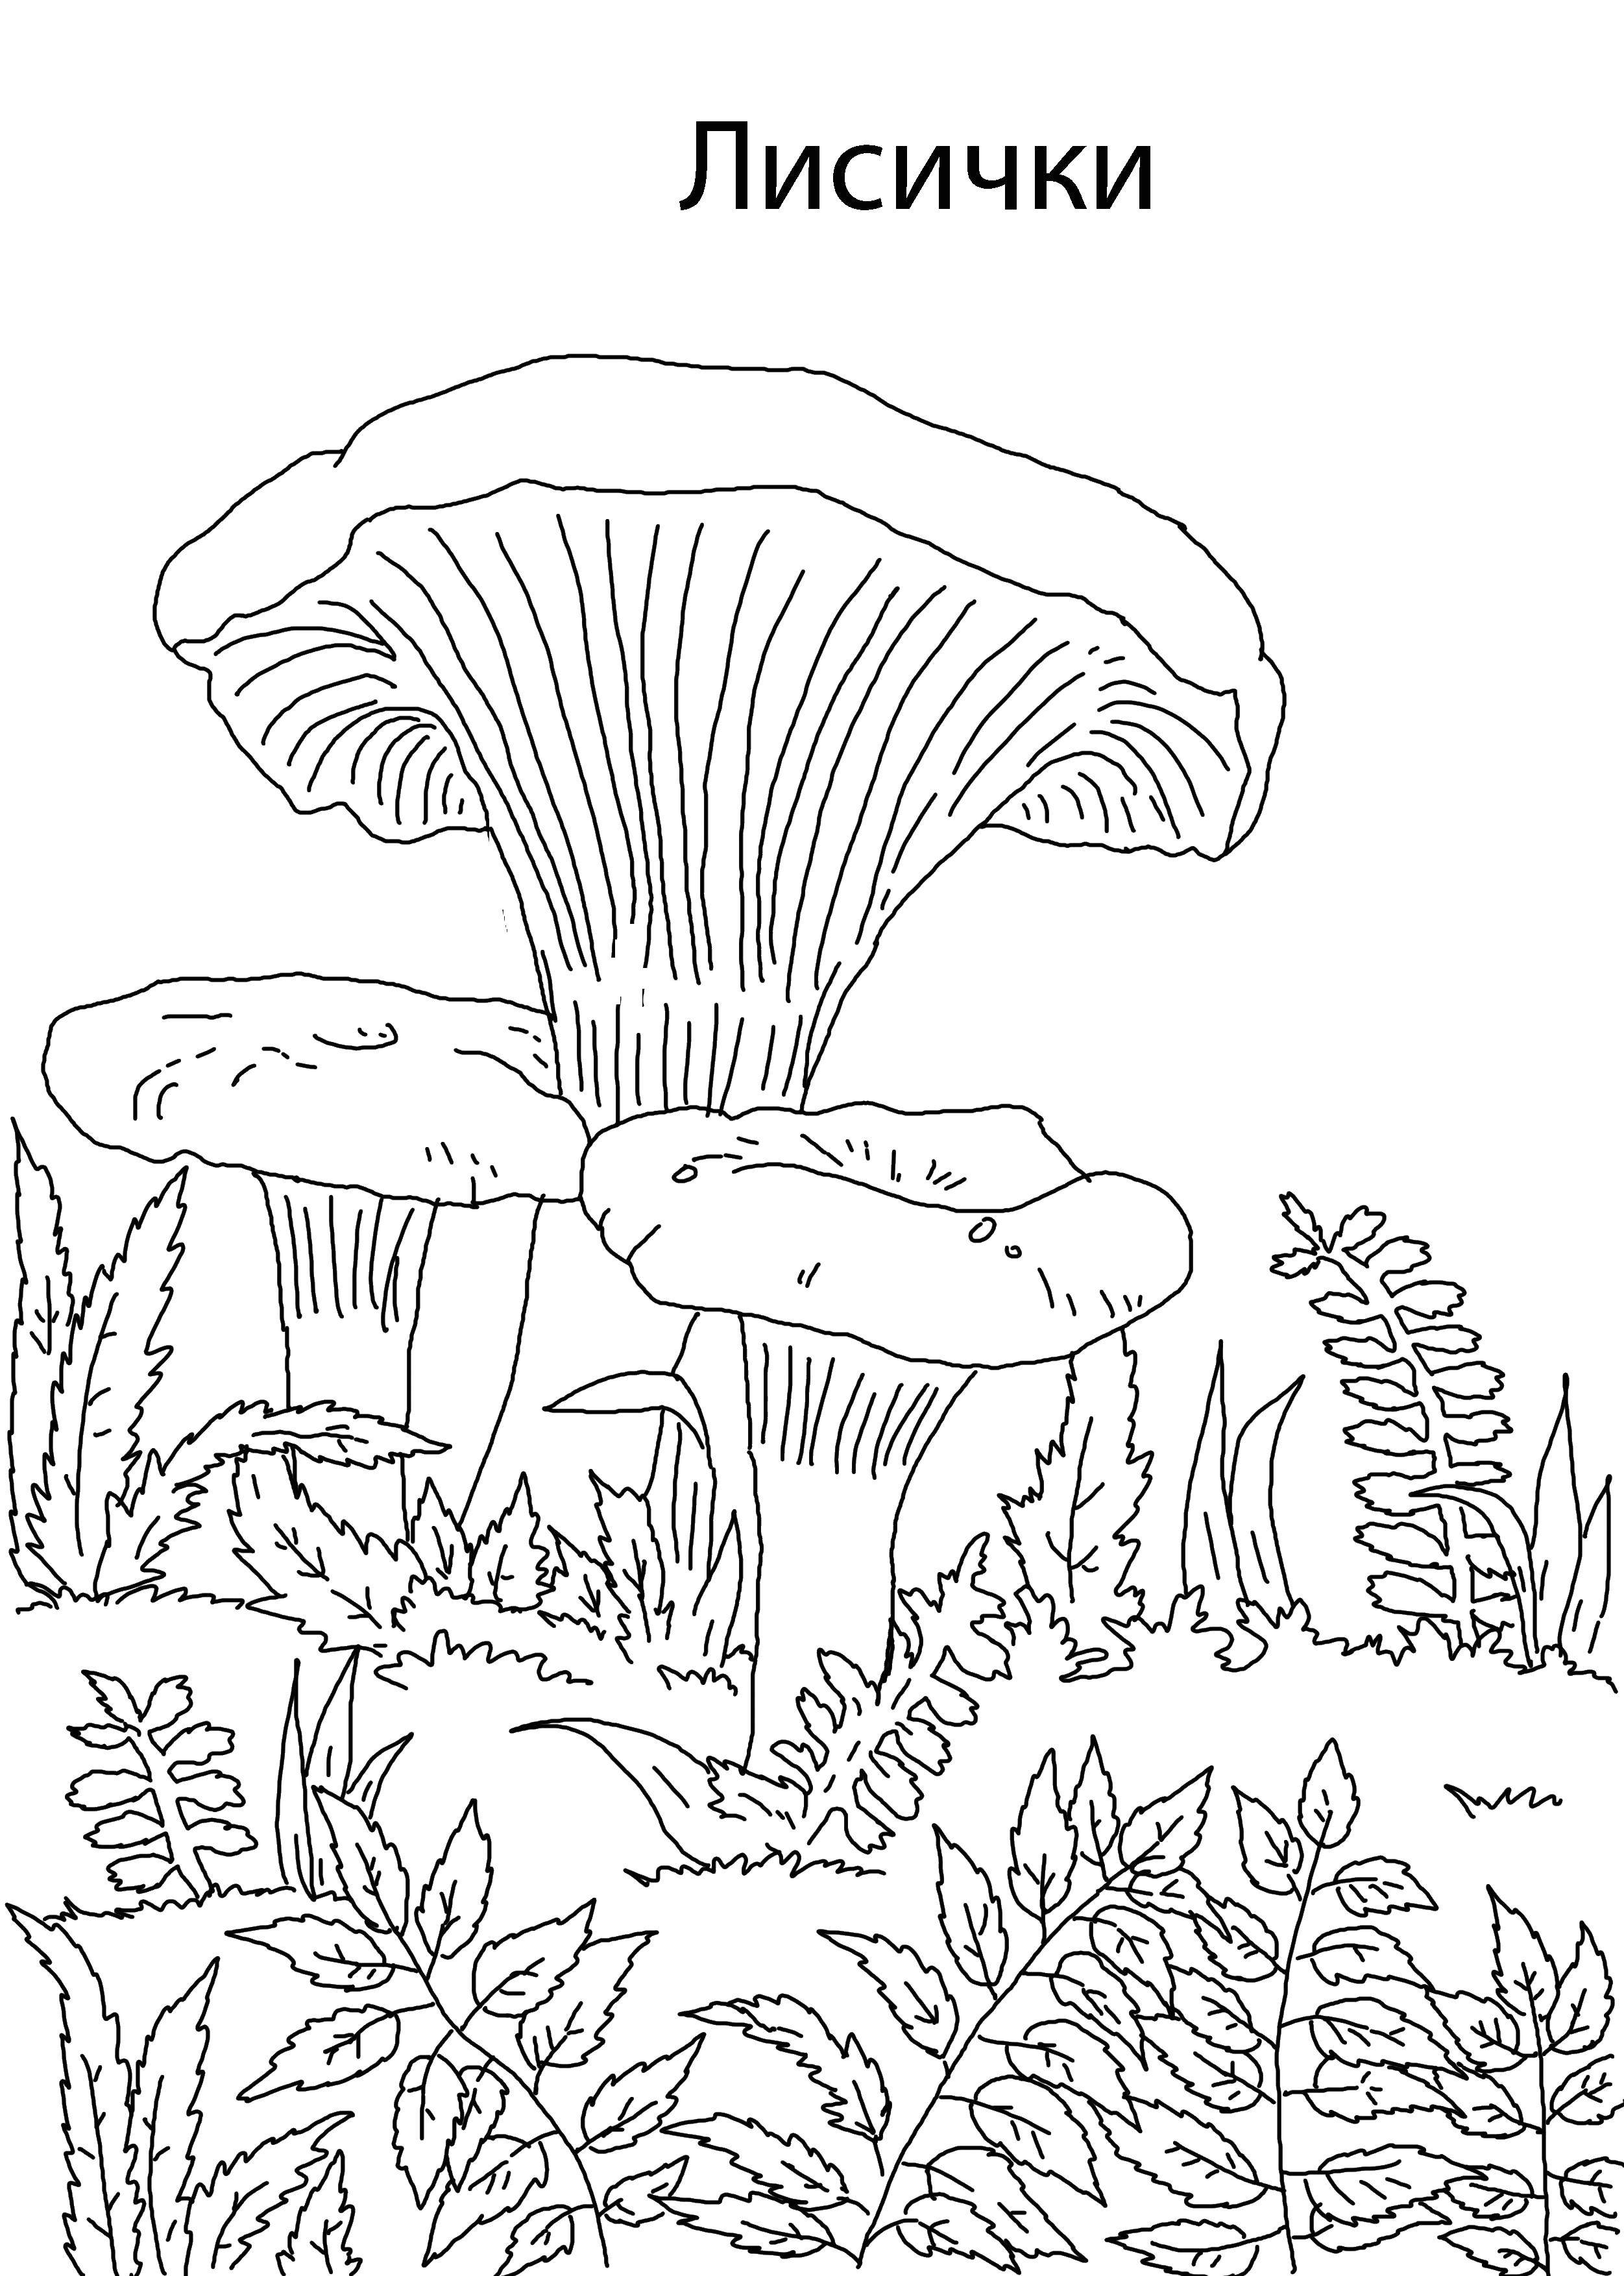 Название: Раскраска Лисичка грибы. Категория: грибы. Теги: грибы, лисичка.